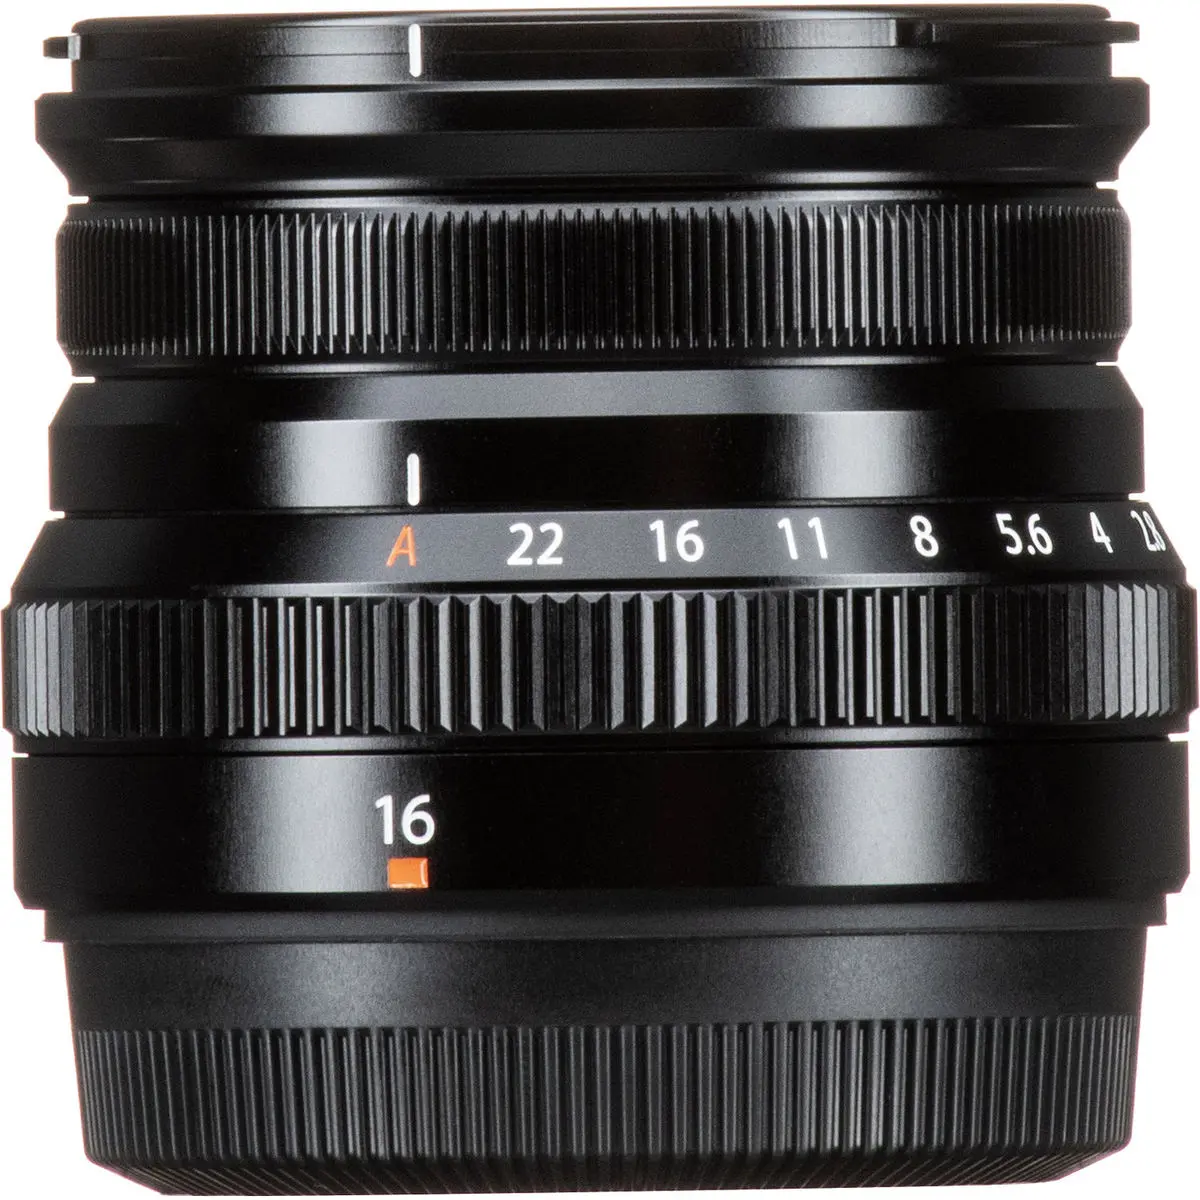 11. FUJINON XF 16mm F2.8 R WR Black Lens